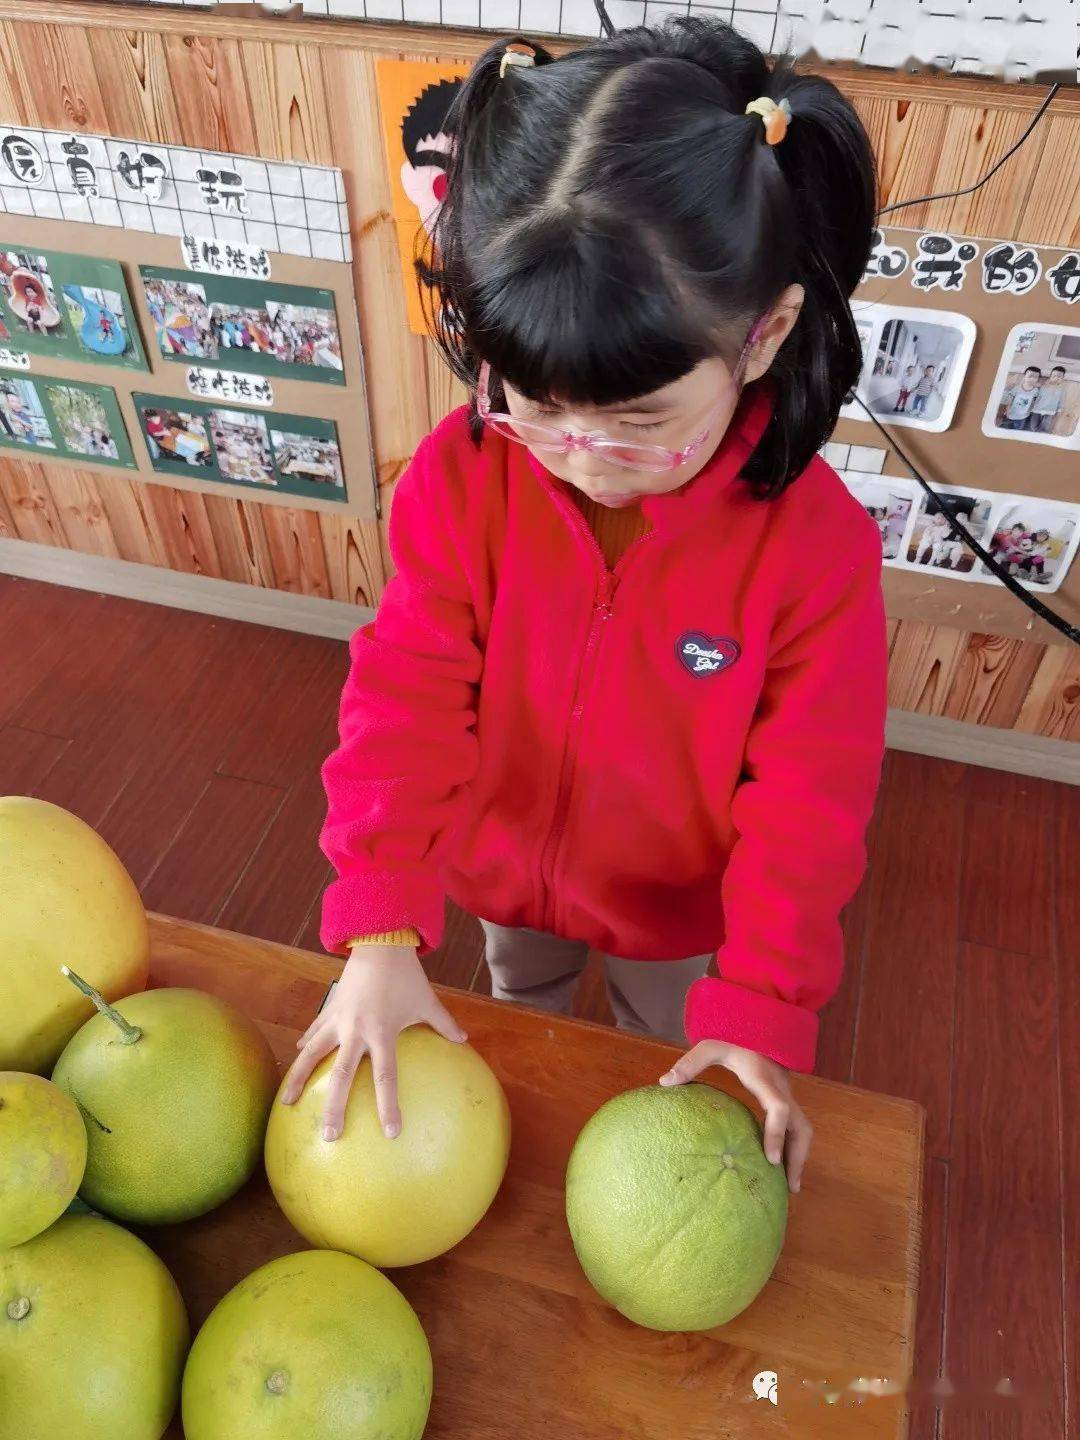 郑家坞镇中心幼儿园开展首届柚子节活动 - 浦江教育公共服务平台